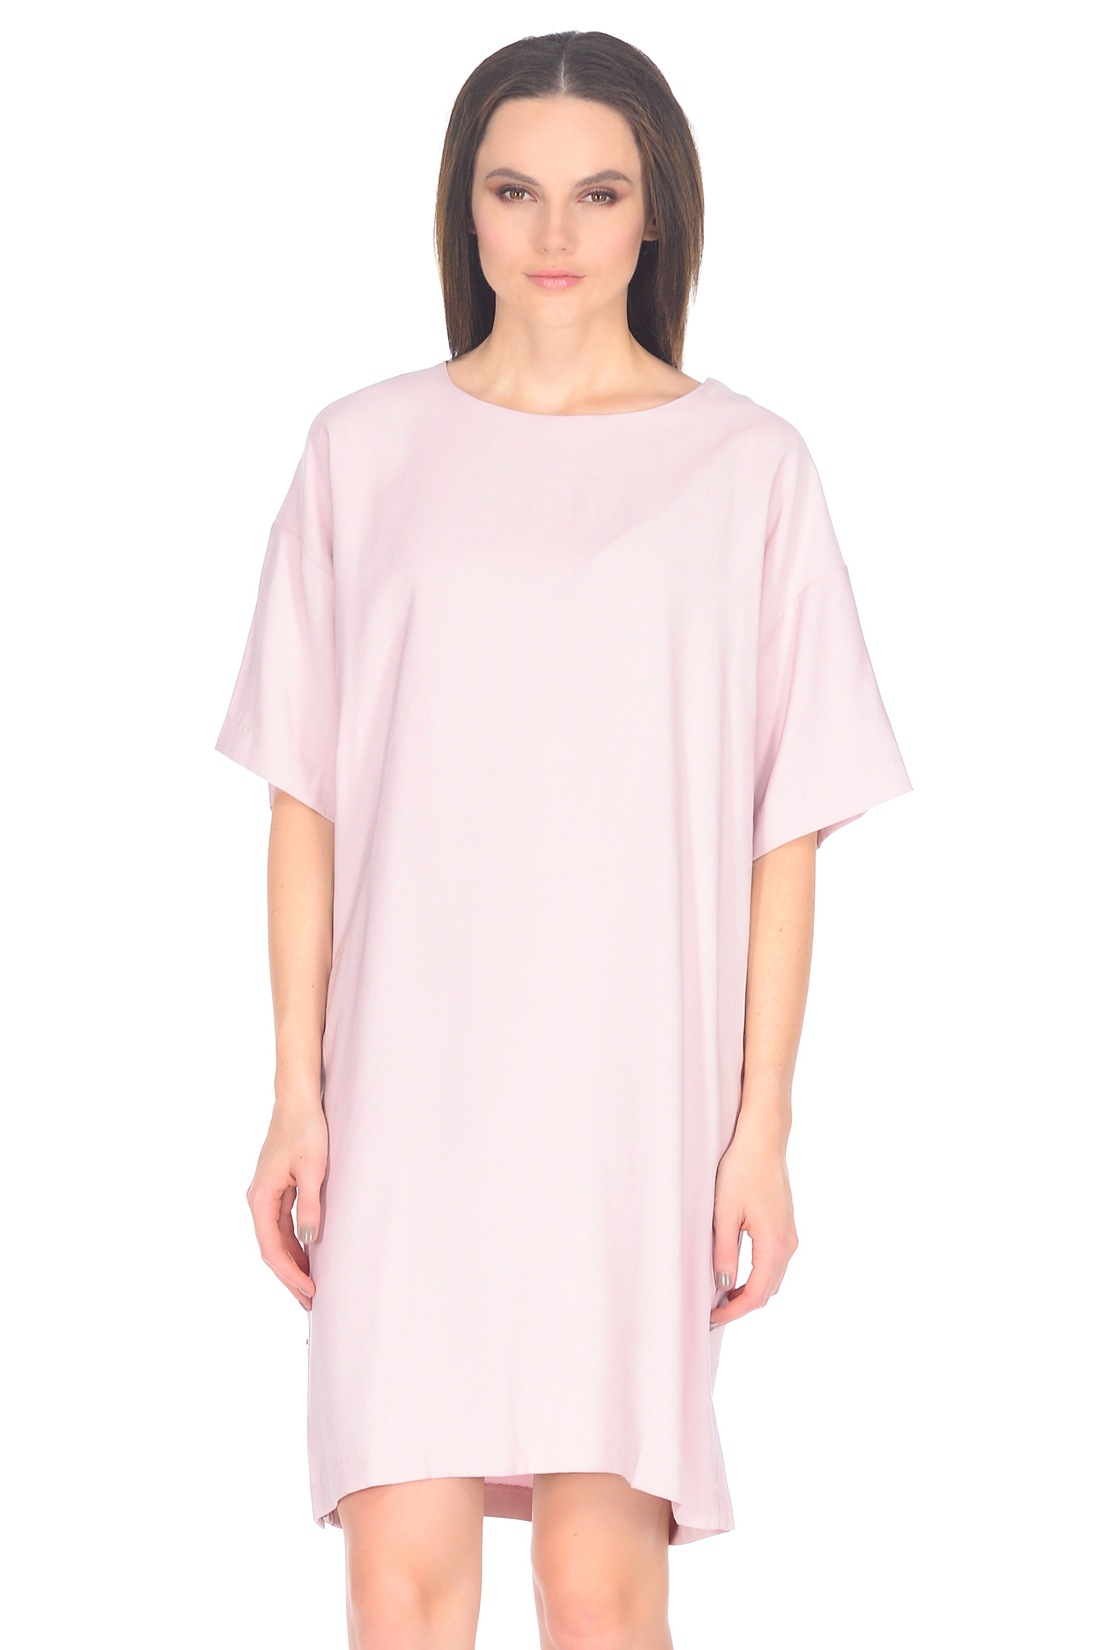 Свободное платье с кнопками (арт. baon B458011), размер XXL, цвет розовый Свободное платье с кнопками (арт. baon B458011) - фото 3